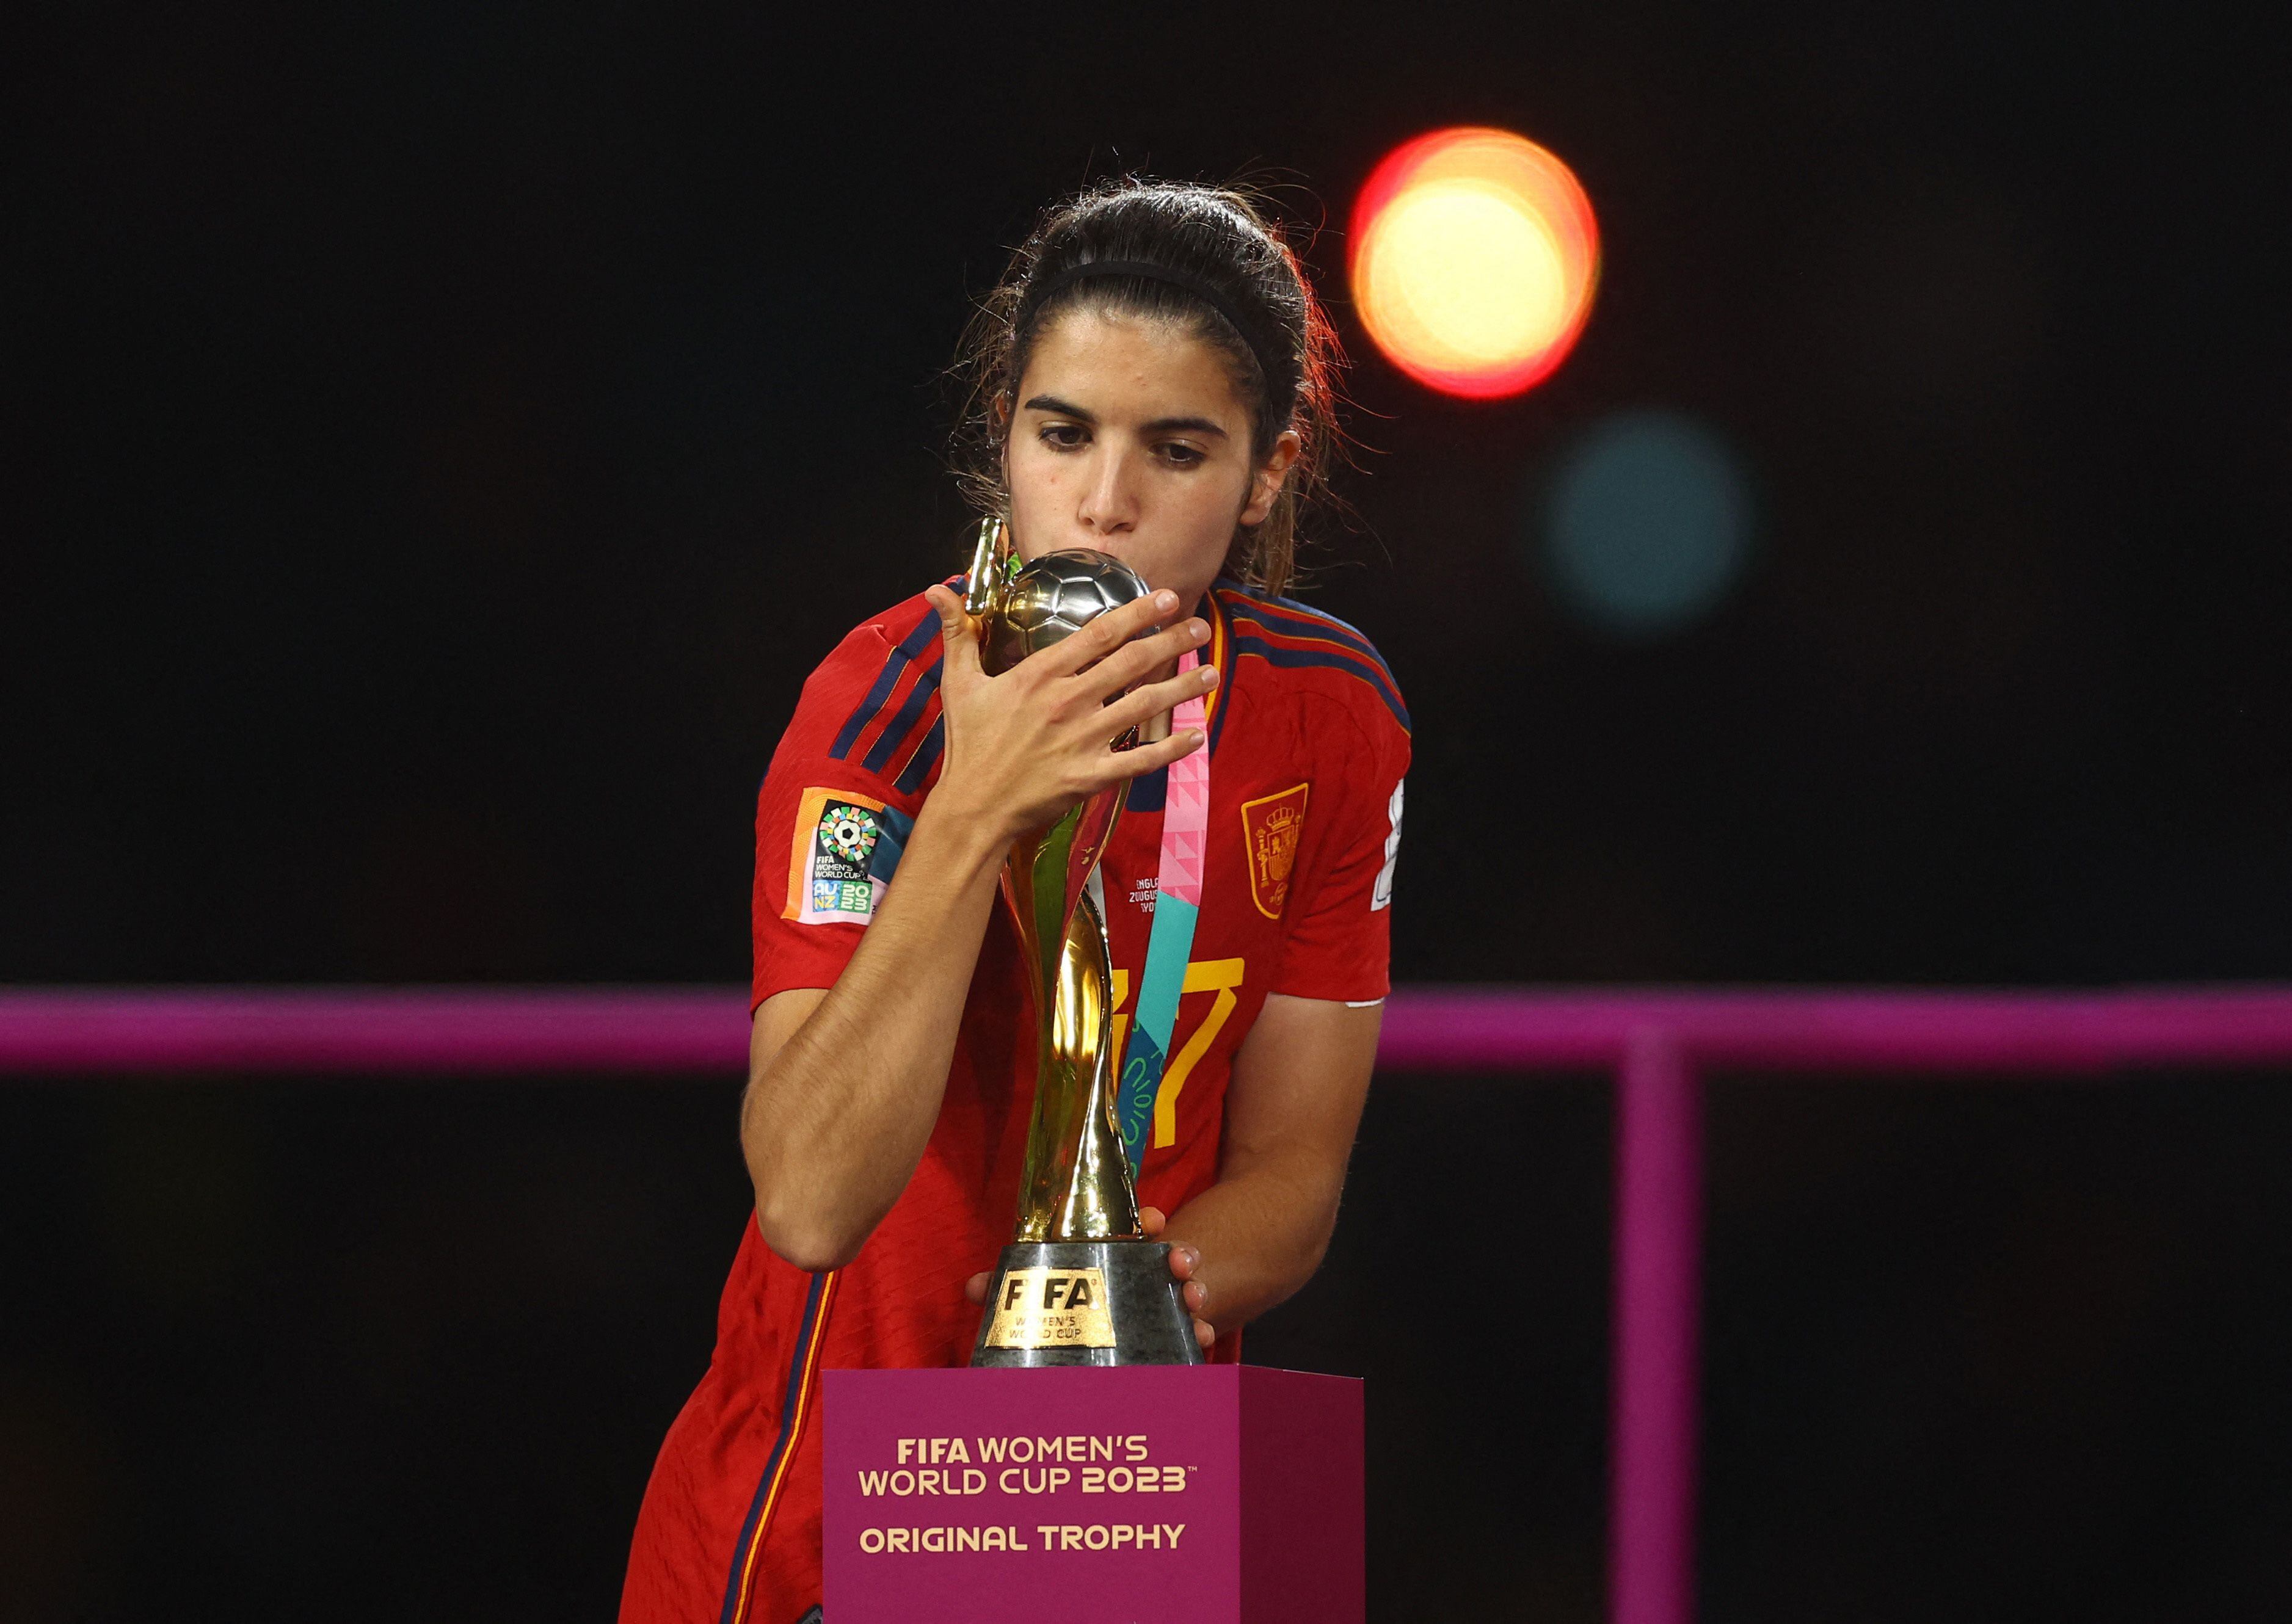 Alba Redondo, al igual que Linda Caicedo, jugó el mundial femenino de 2023 y salió campeona con España - crédito Carl Recine/REUTERS